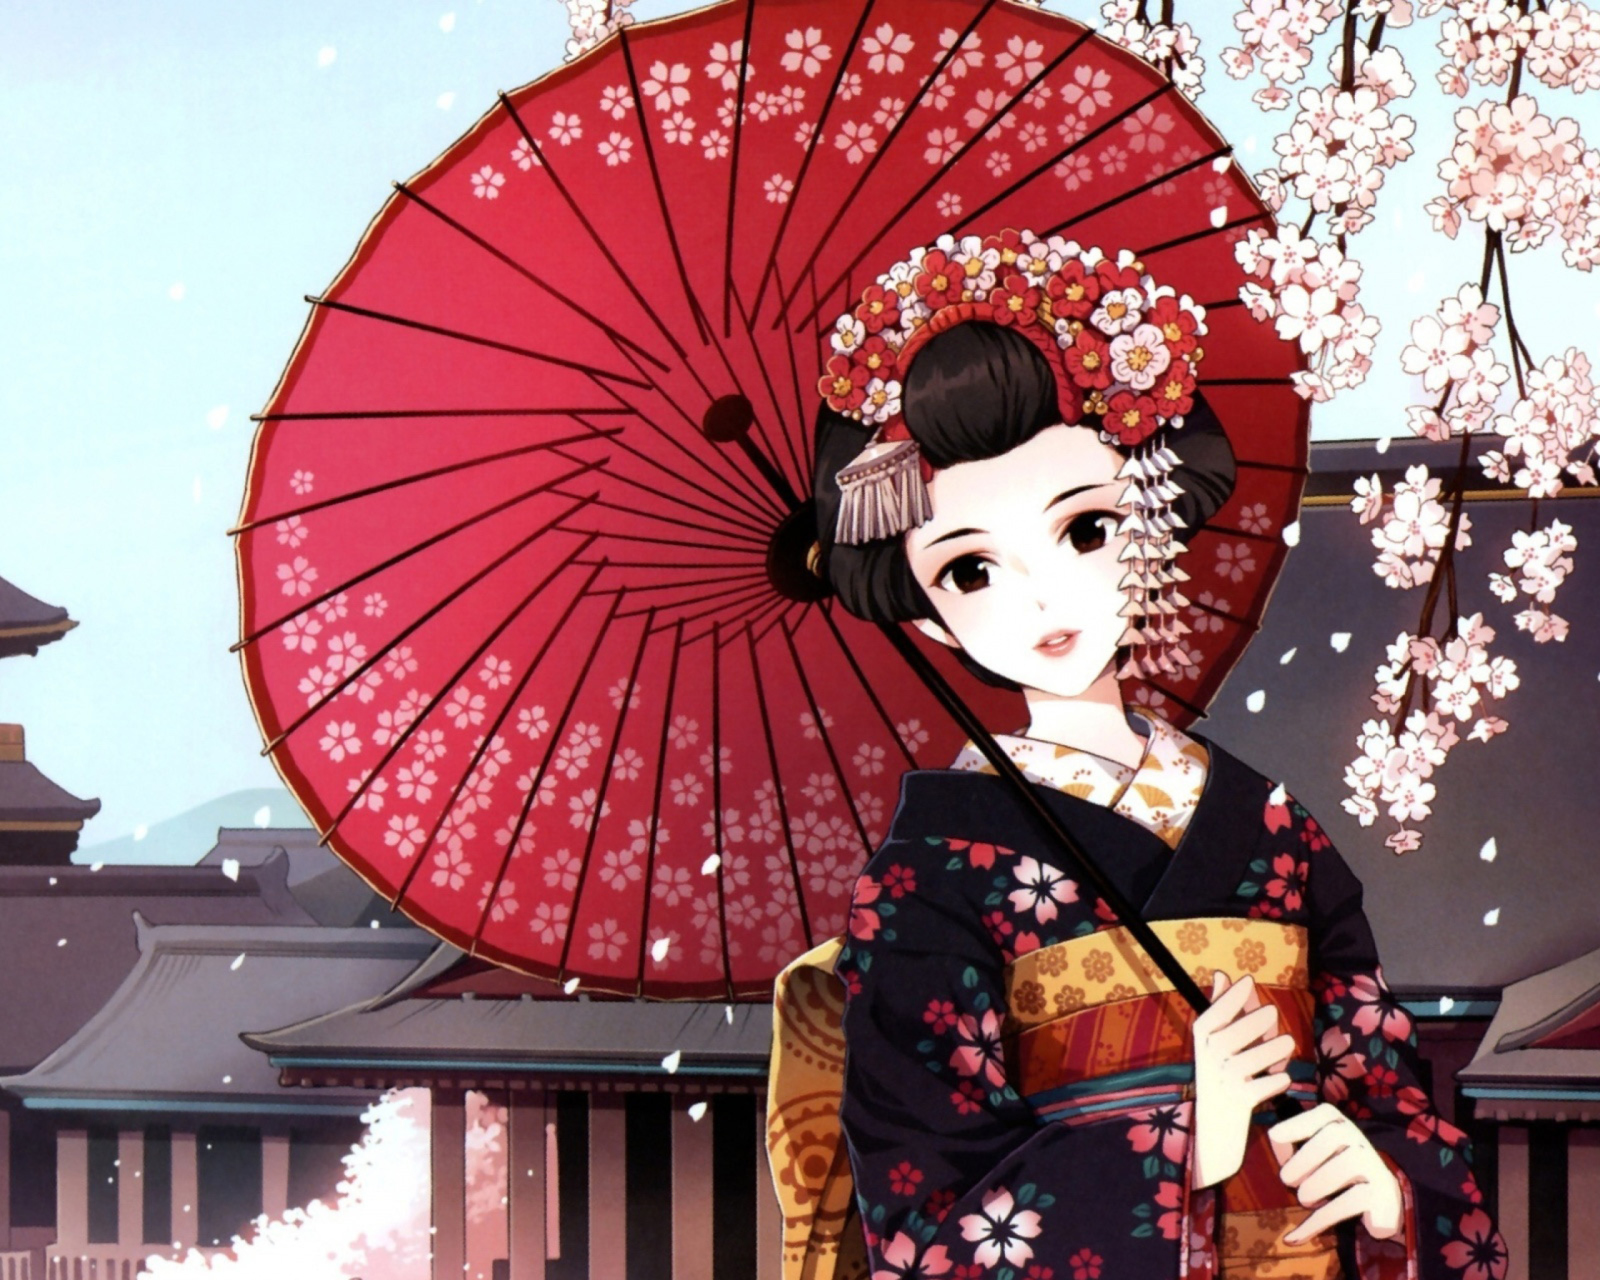 Das Japanese Girl With Umbrella Wallpaper 1600x1280